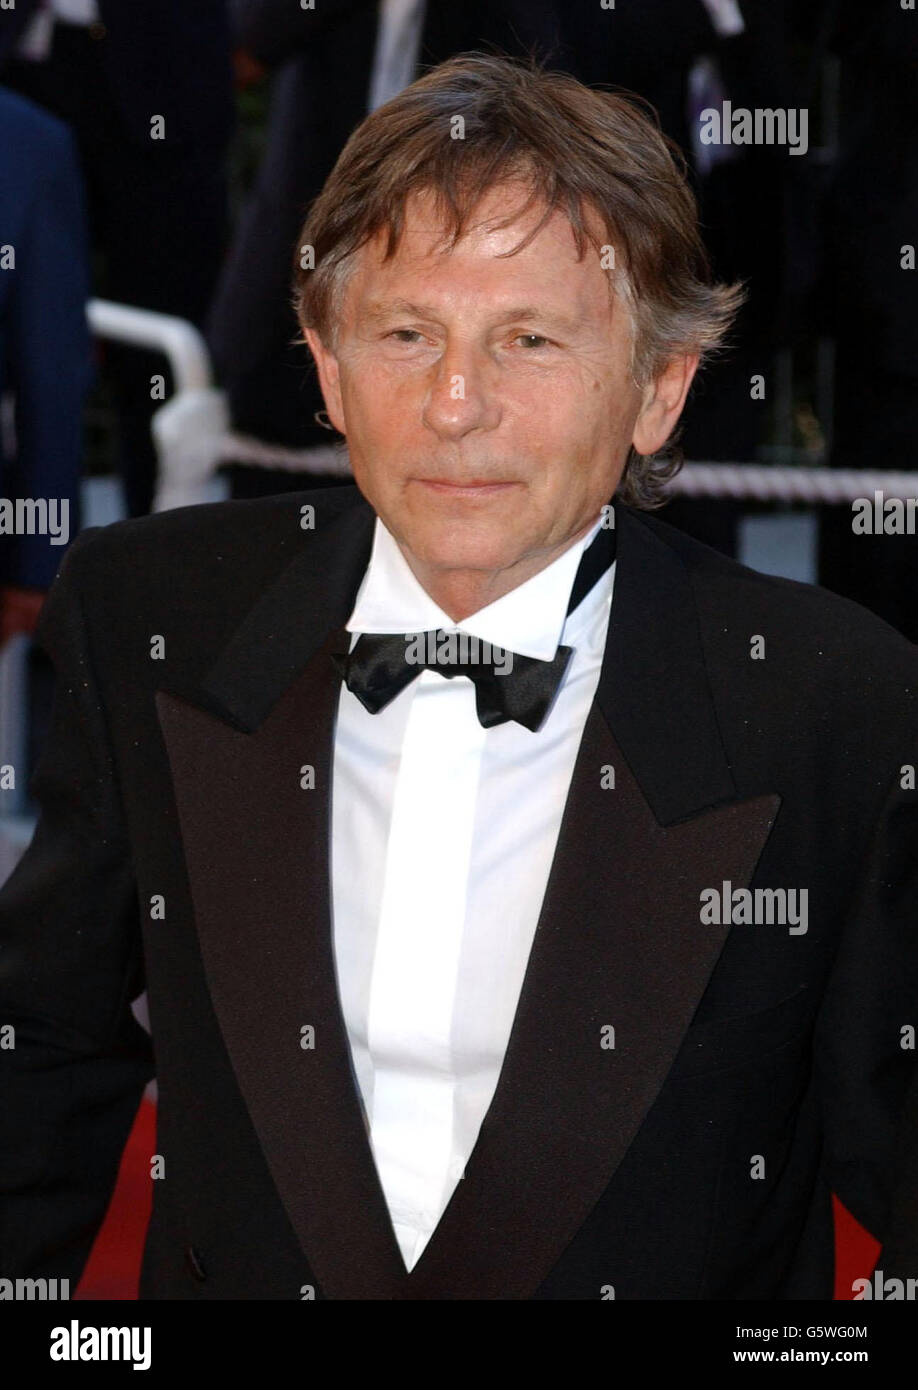 Il regista Roman Polanski arriva al Palais des Festival per la cerimonia di chiusura del 55° Festival di Cannes. 11/02/03 : regista Roman Polanski che è stato nominato per un Premio Accademia per il suo film 'il pianista'. Foto Stock